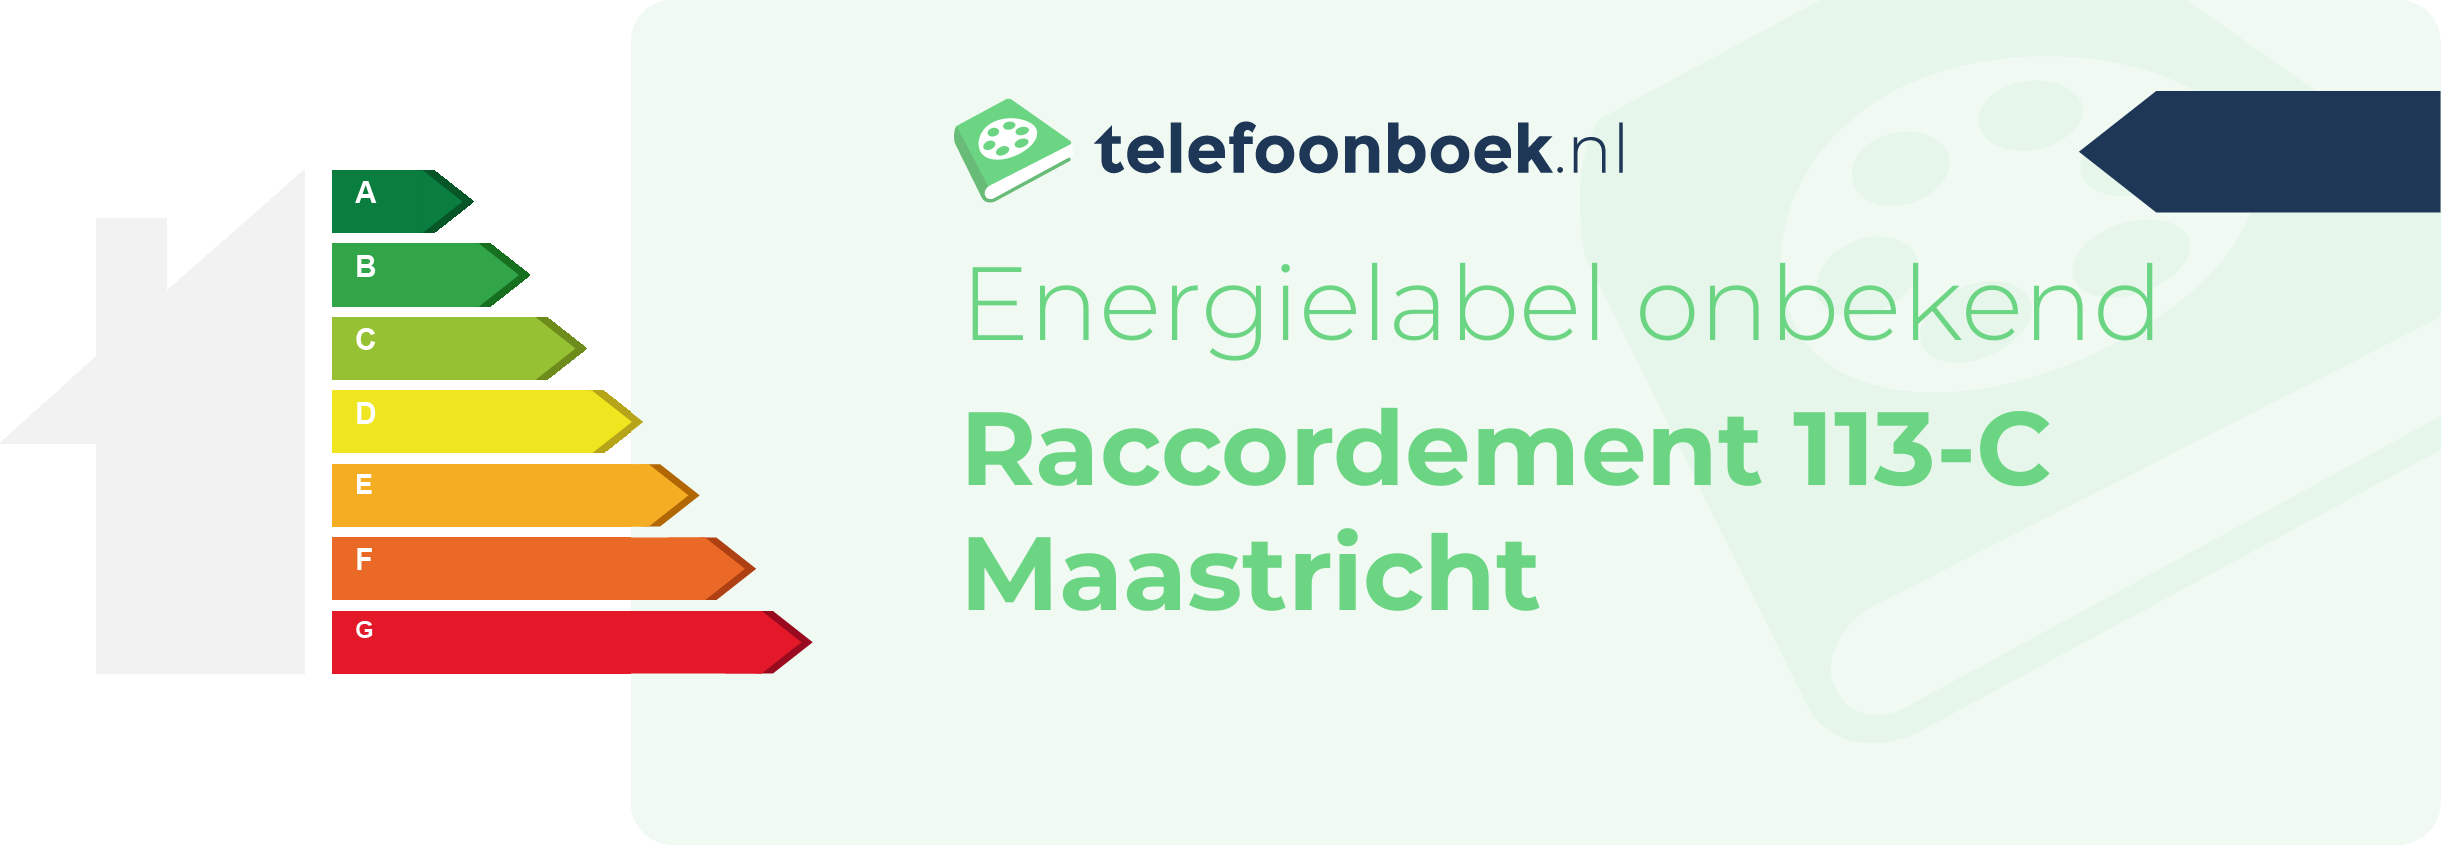 Energielabel Raccordement 113-C Maastricht